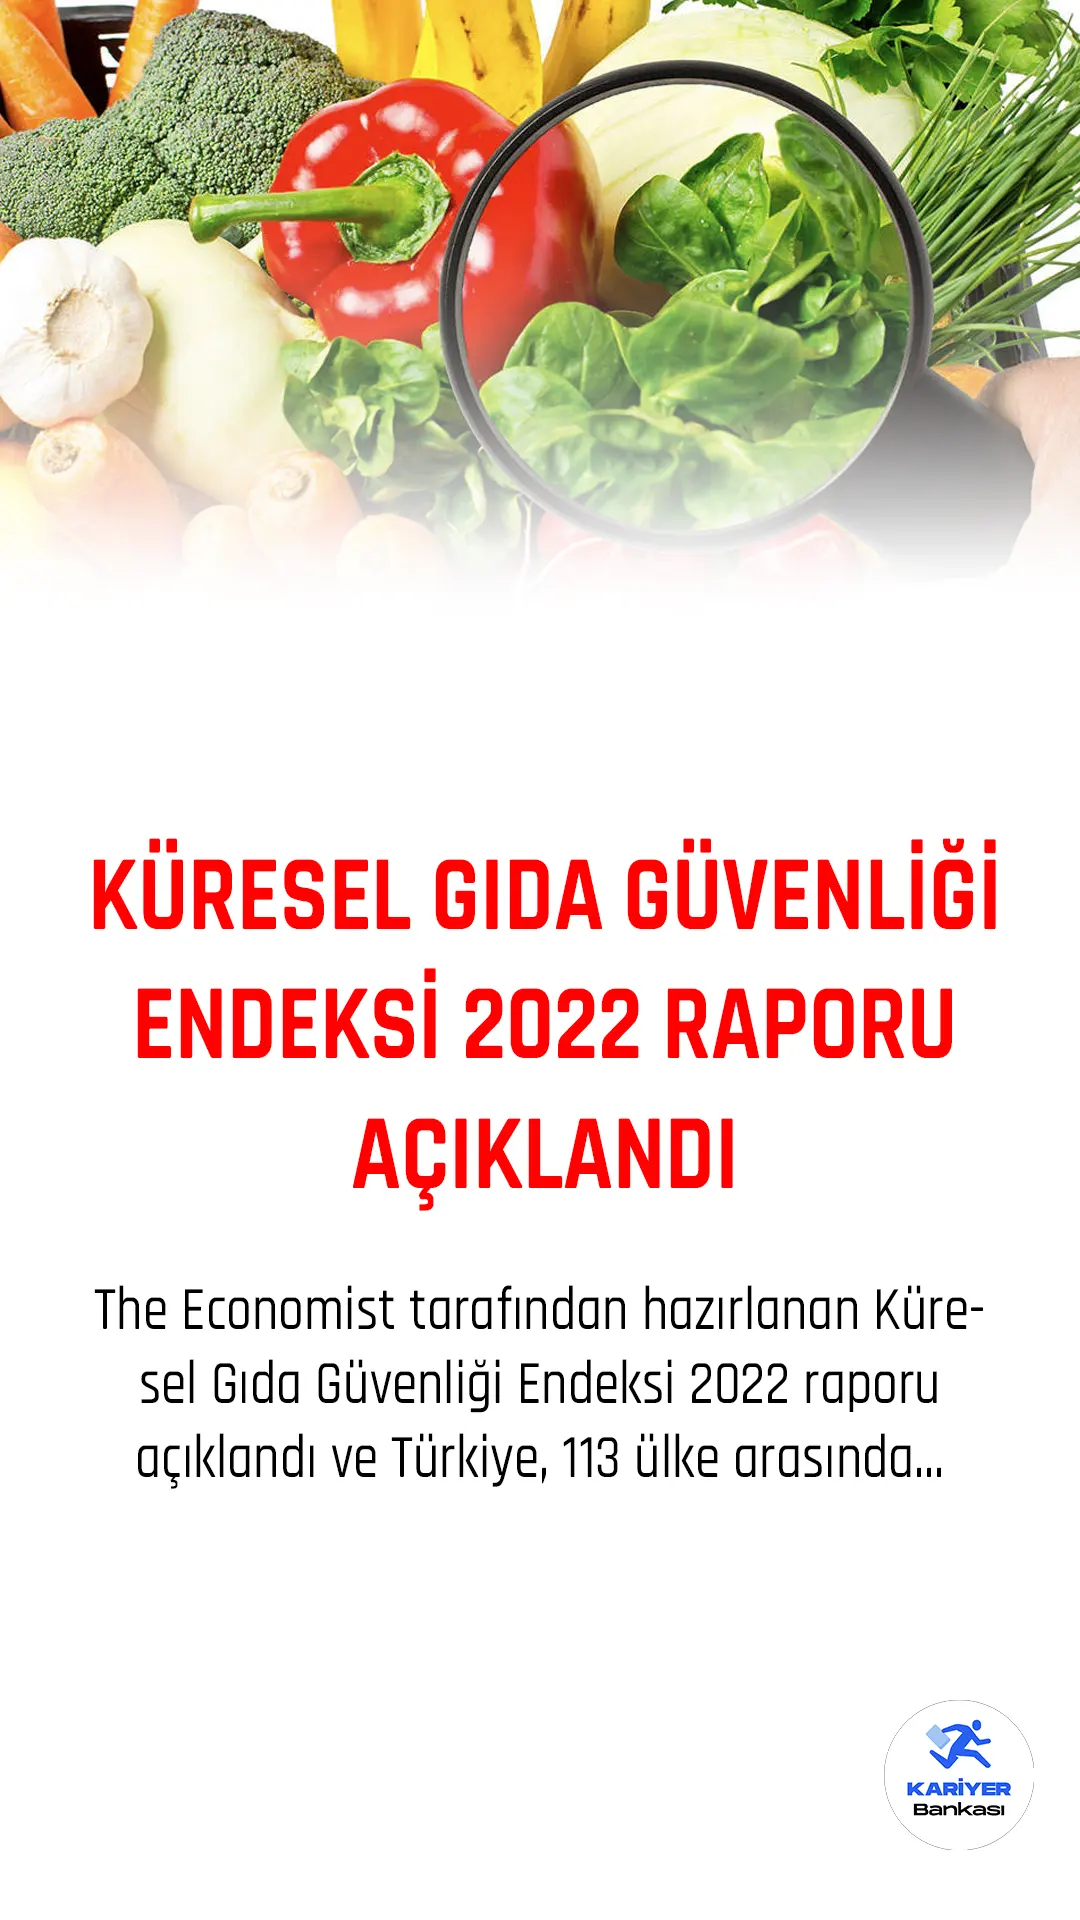 The Economist tarafından hazırlanan Küresel Gıda Güvenliği Endeksi 2022 raporu açıklandı ve Türkiye, 113 ülke arasında 49. sırada yer aldı. Bu sonuç, Türkiye'nin son 10 yılda 13 sıra gerilemesi anlamına geliyor.